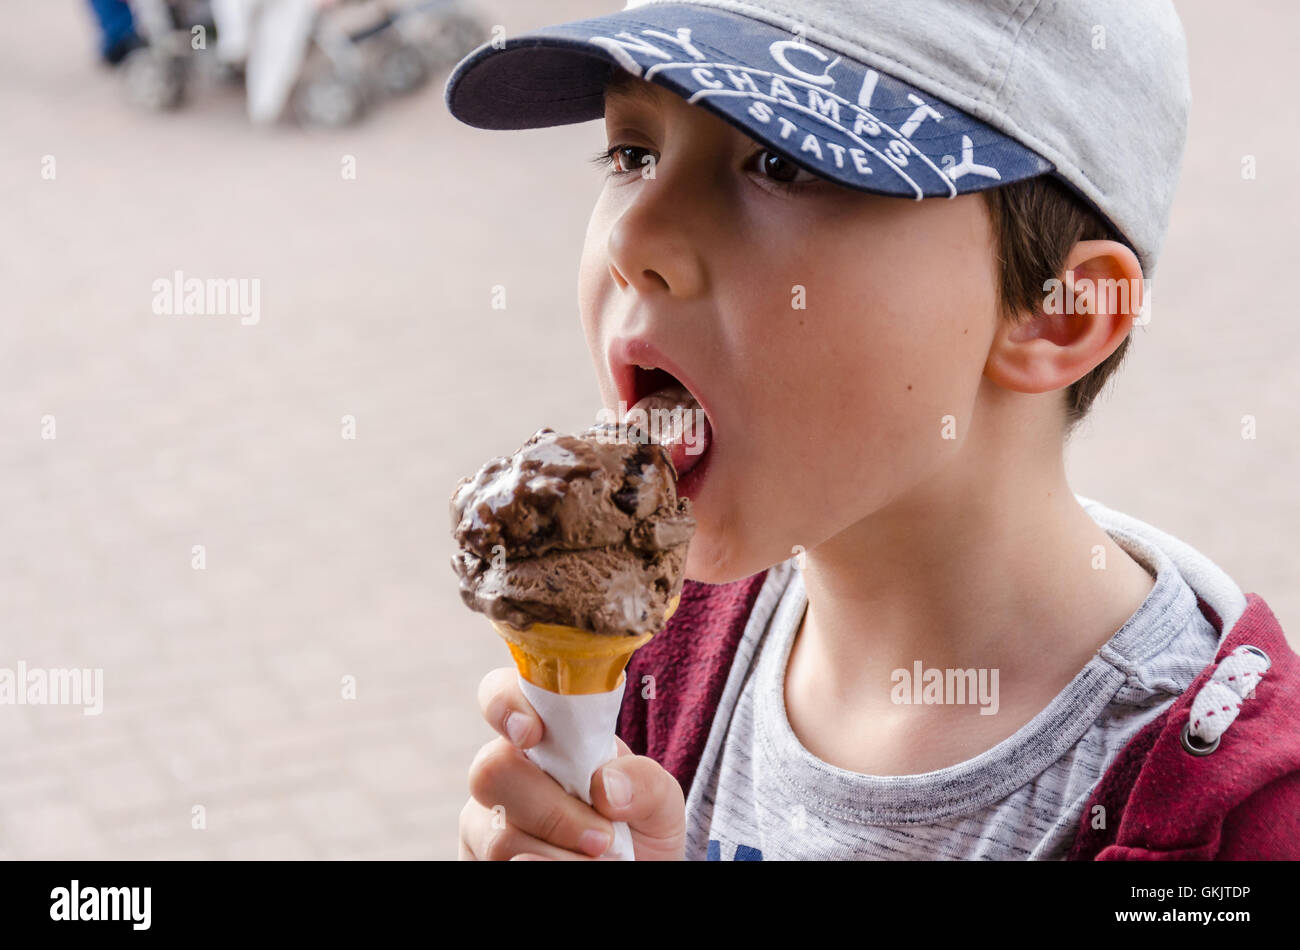 Un jeune garçon jouit d'une glace au chocolat. Banque D'Images